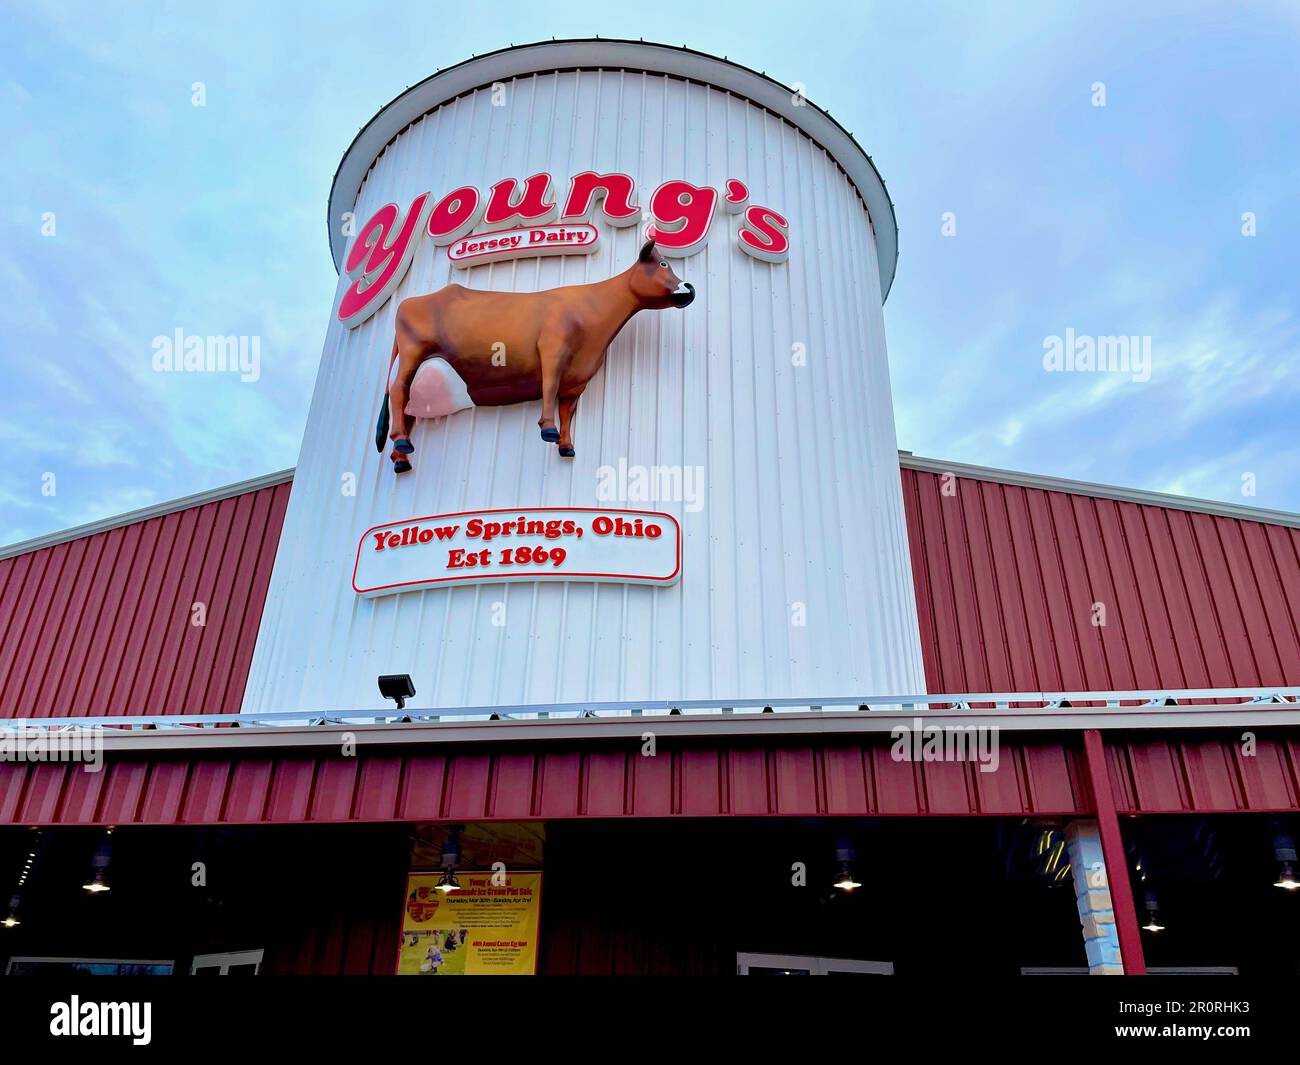 Young's Jersey Dairy ist ein beliebtes Wahrzeichen in der Nähe des Dorfes Yellow Springs, Ohio (USA), bekannt für sein Eis und andere frische Lebensmittel. Stockfoto